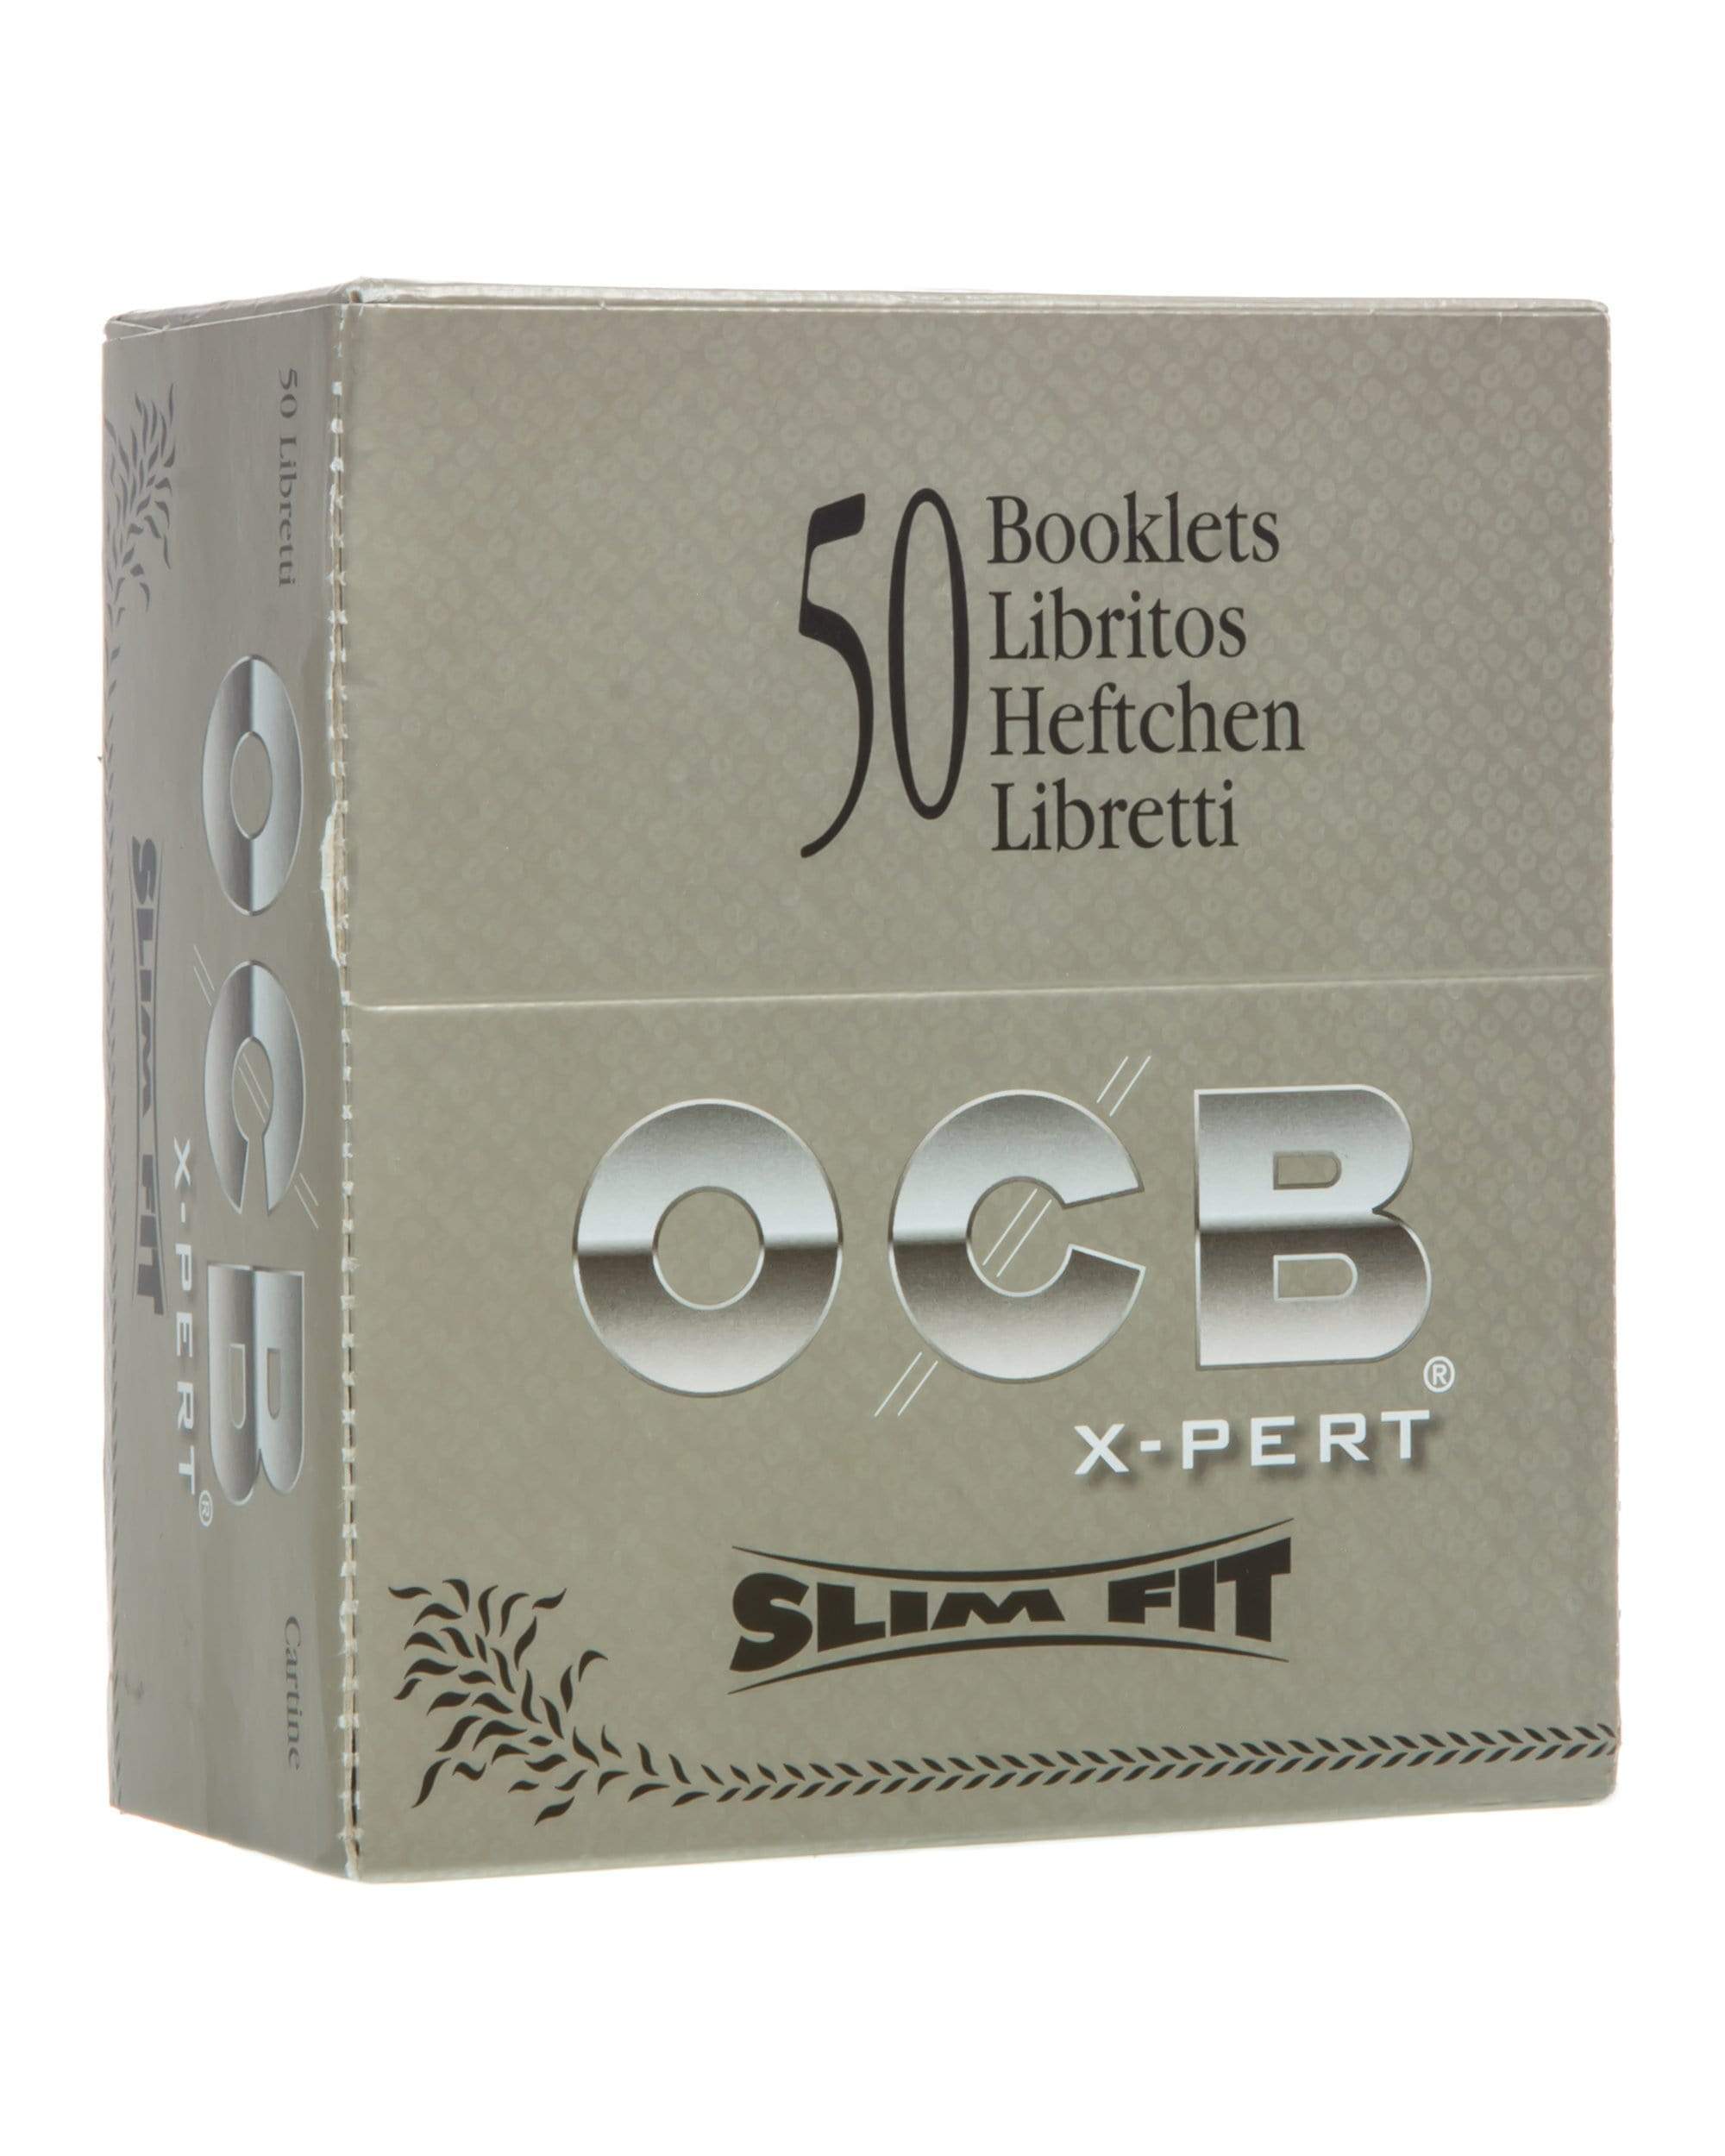 OCB X-PERT SlimFit Rolling Papers x 50